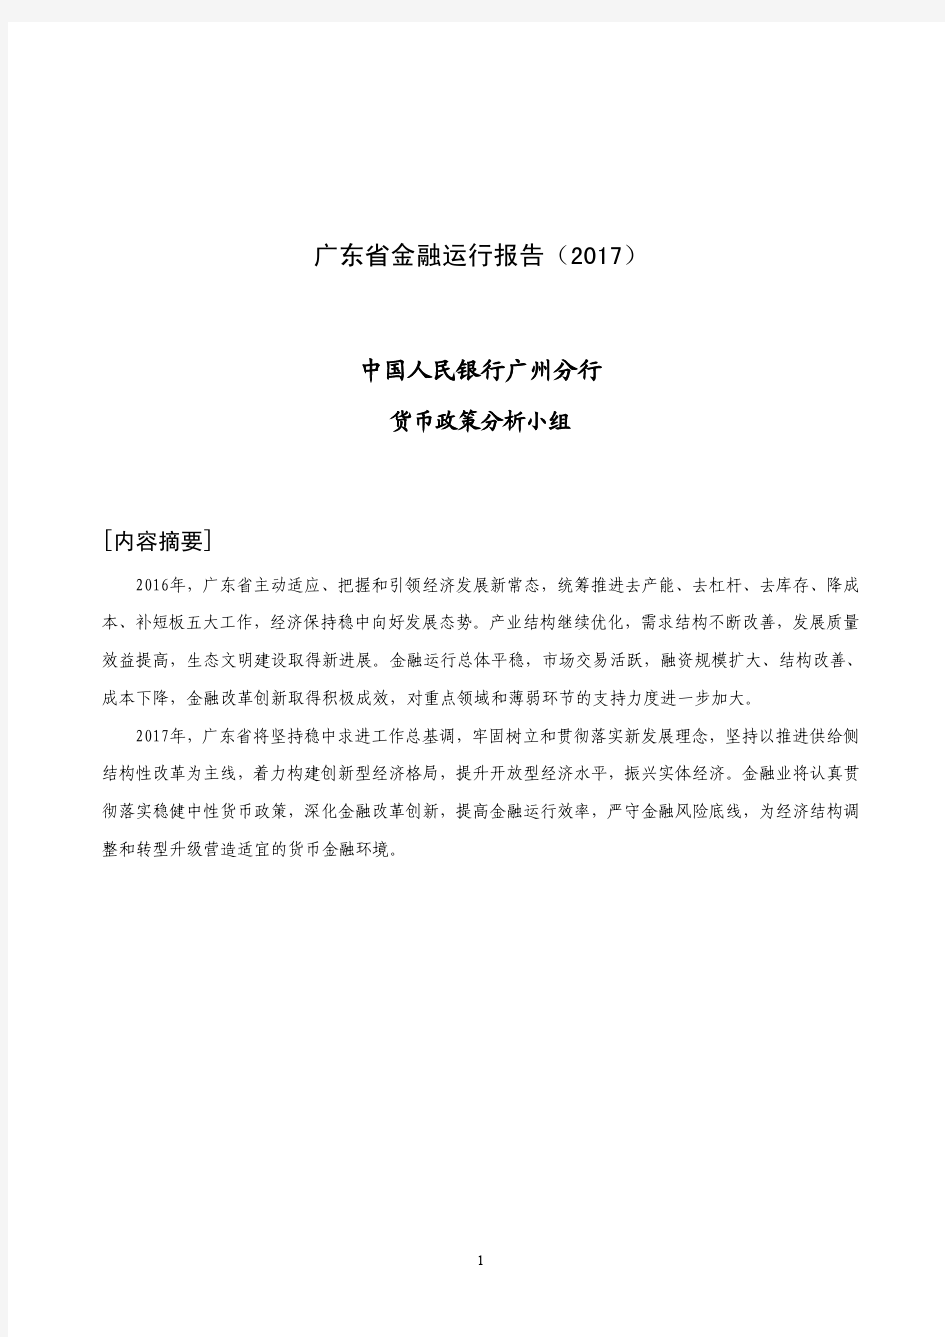 广东省金融运行报告(2017)